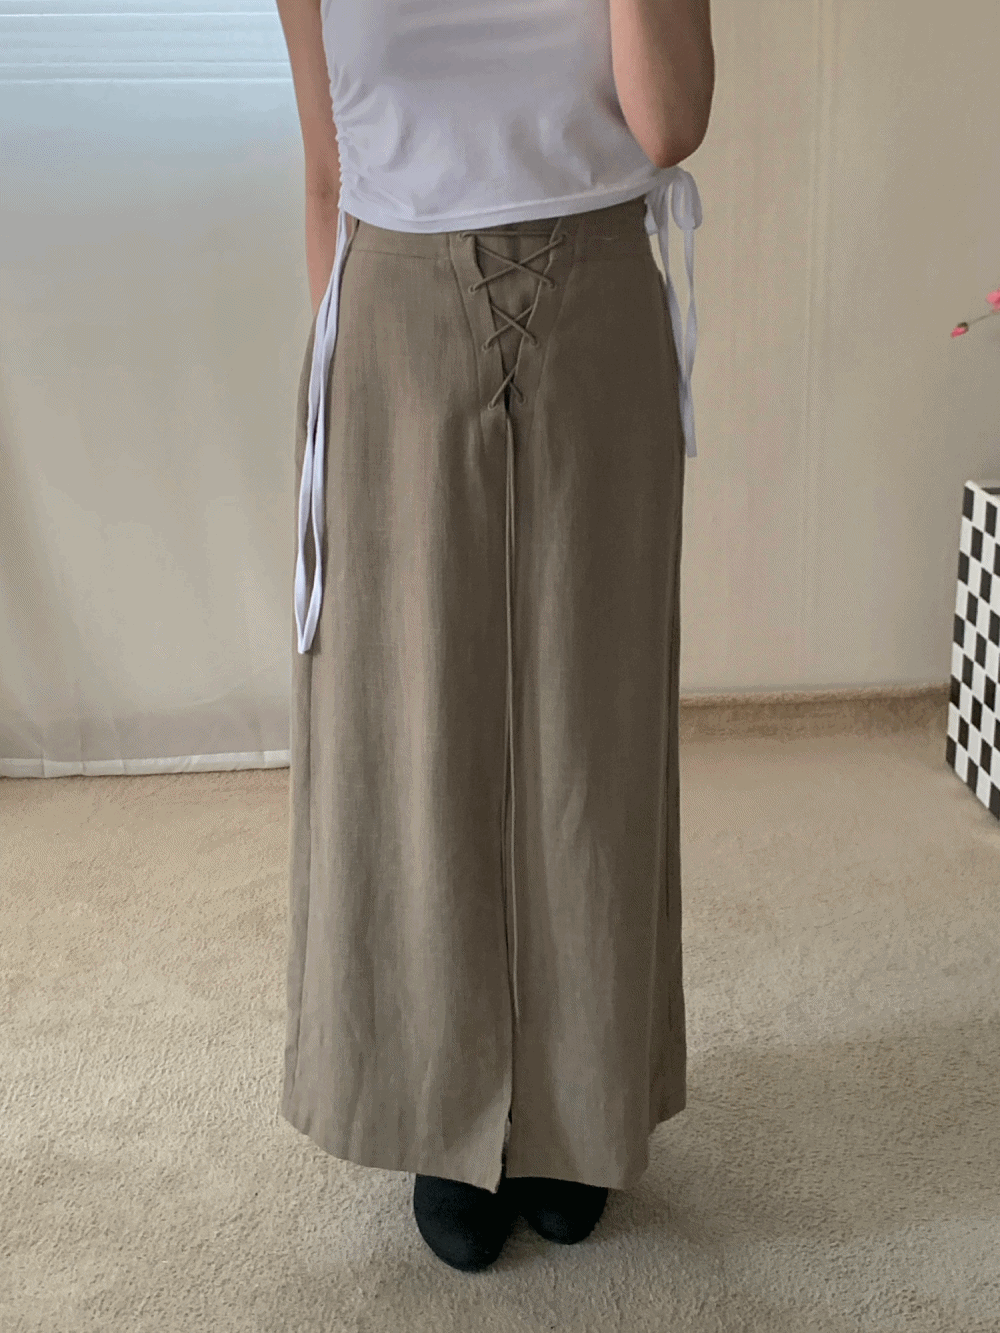 [Skirt] Eyelet strap maxi skirt / 2 colors